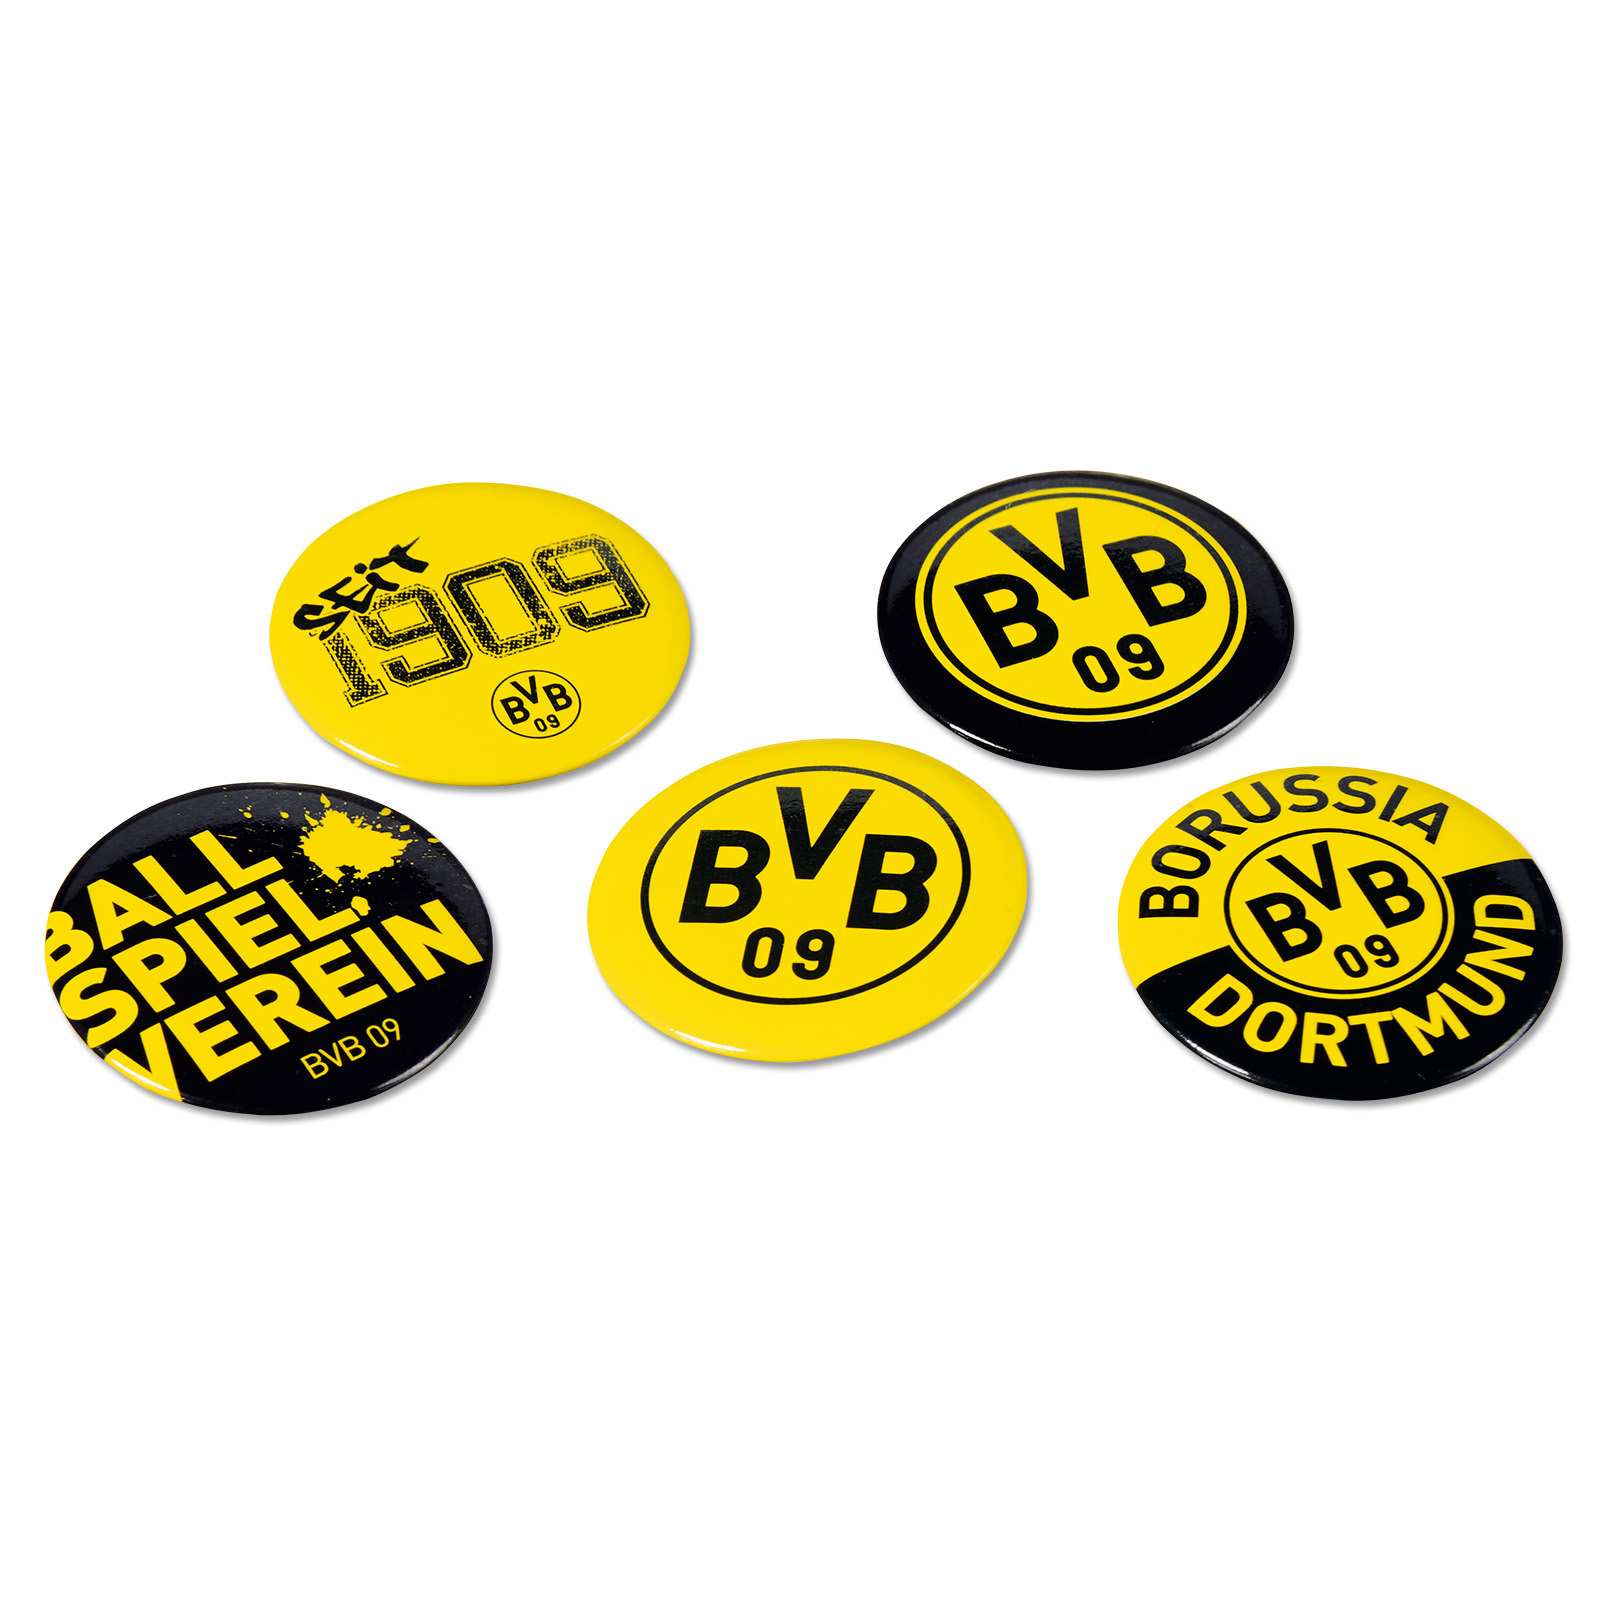 BVB-Pin Borsigplatz Borussia Dortmund 